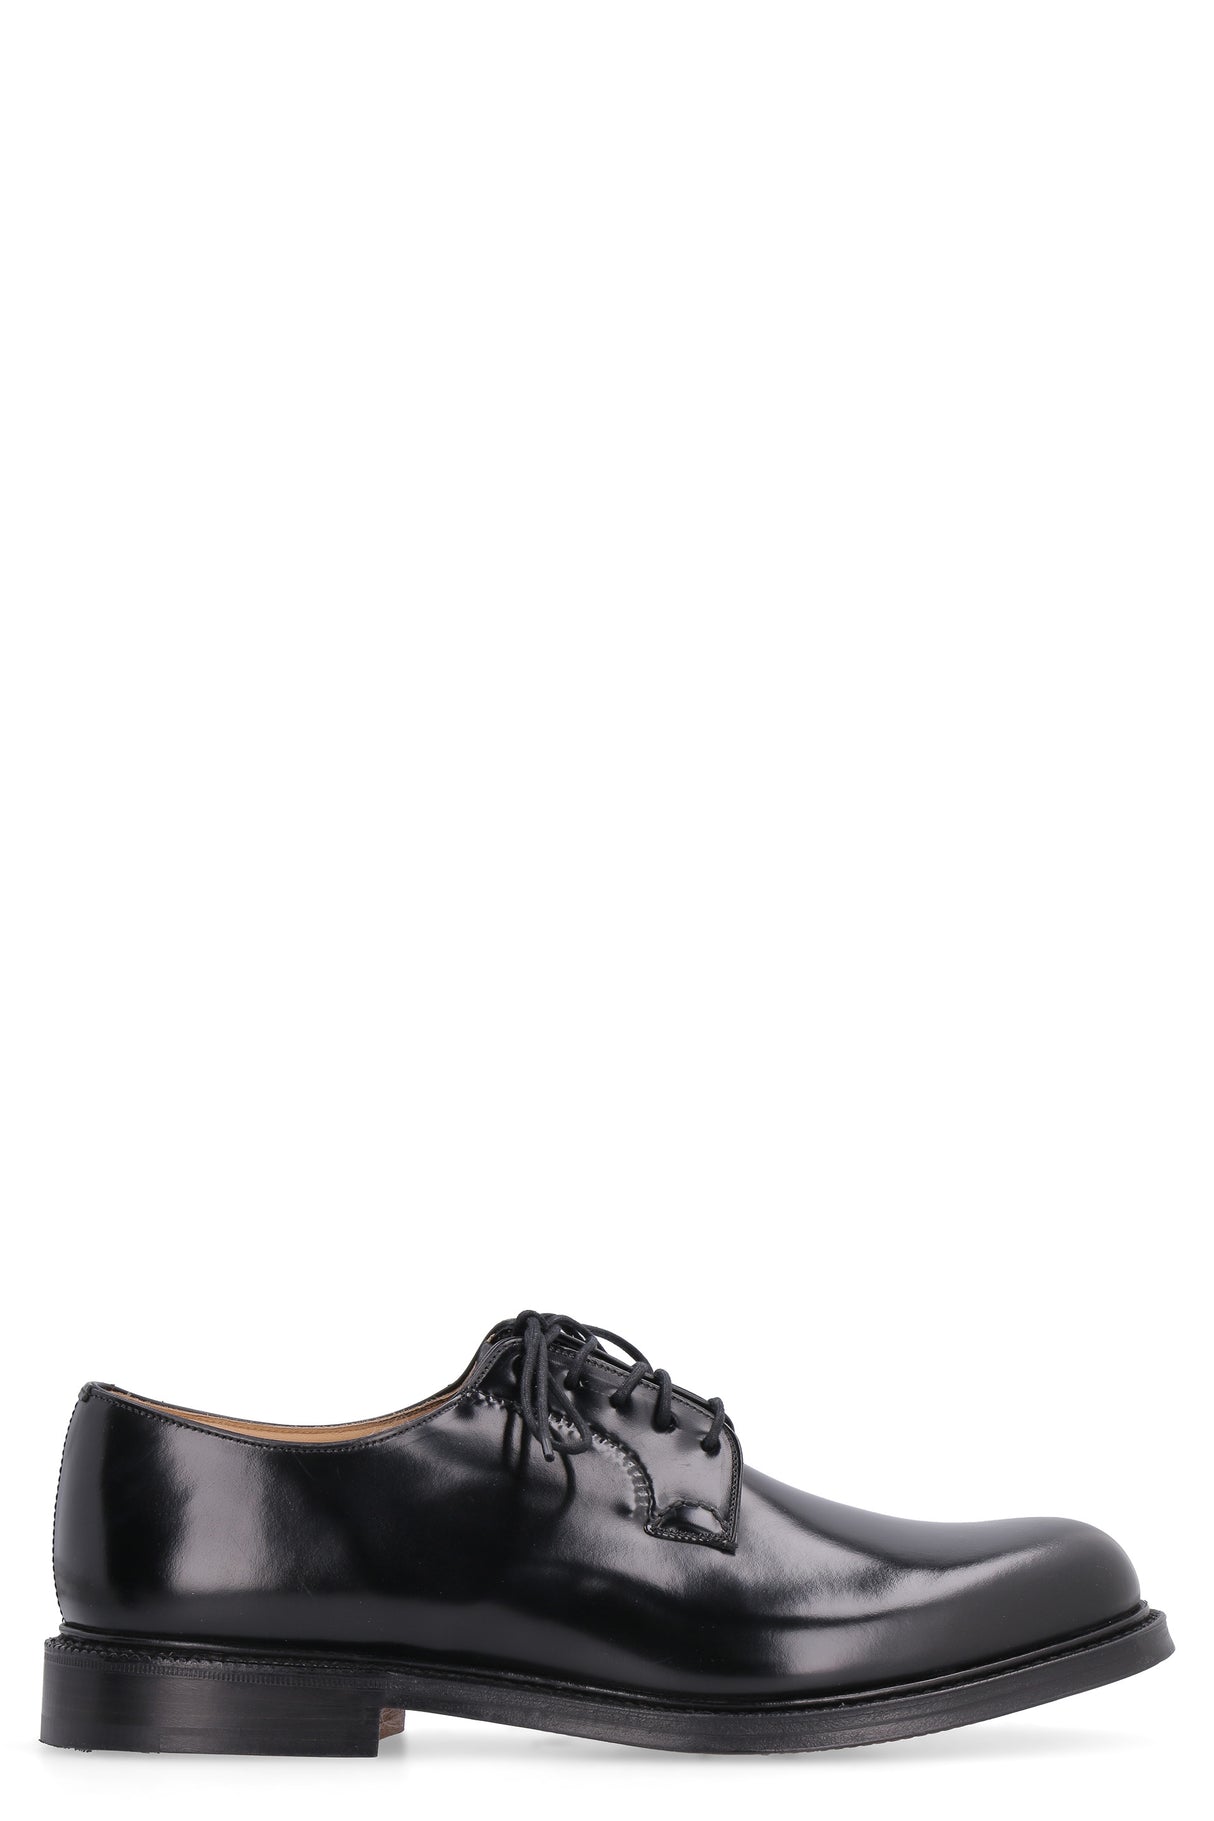 حذاء رسمي أسود للرجال مع خياطة يدوية ورباط جلدي